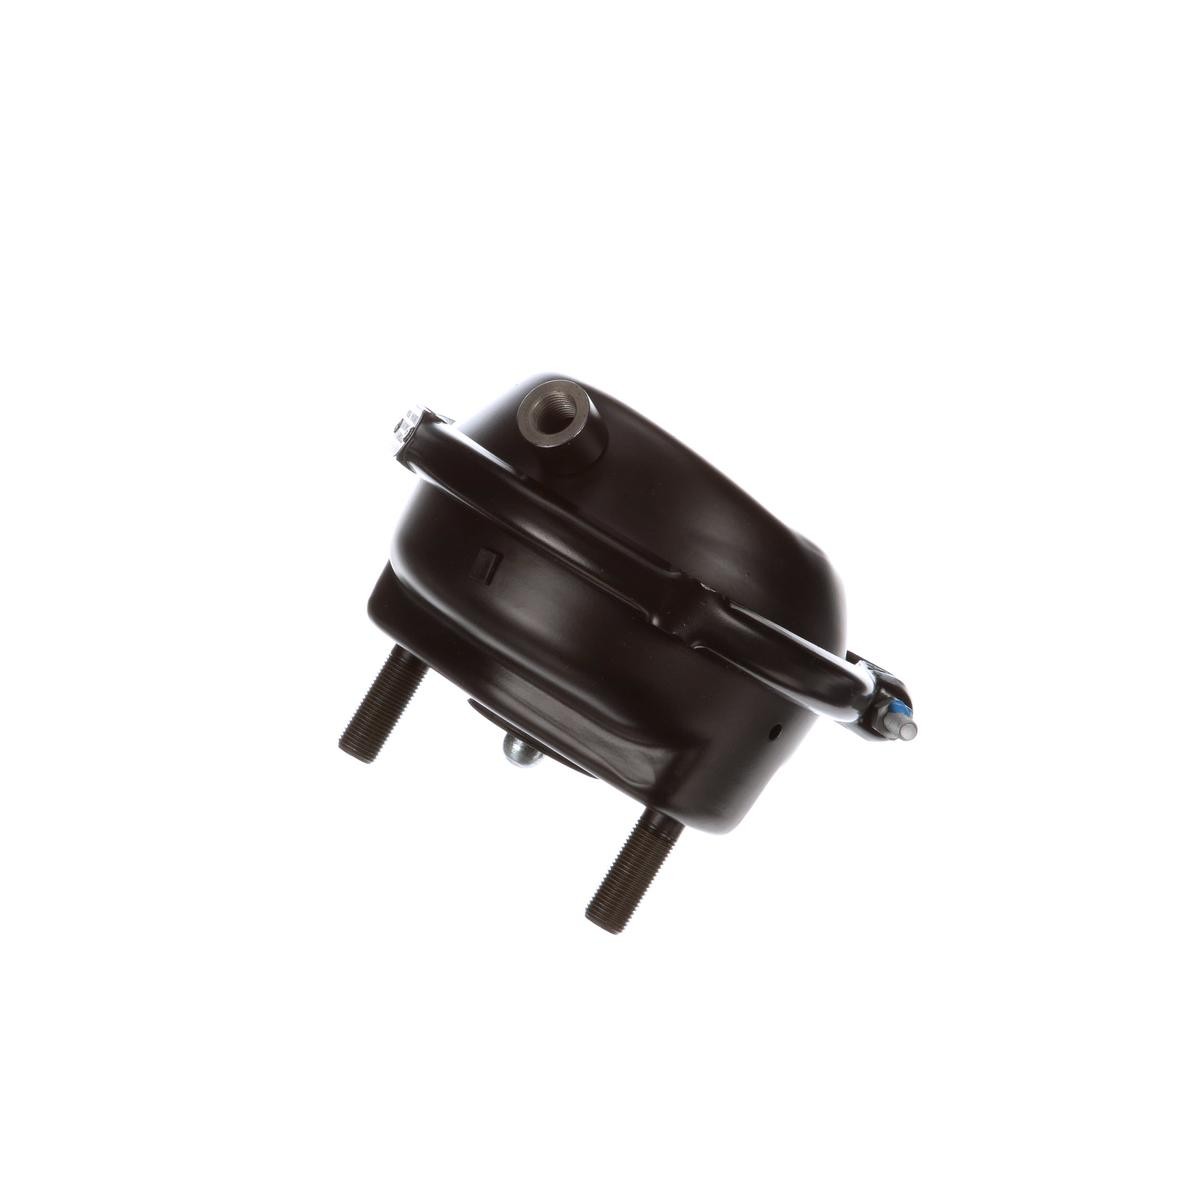 KNORR-BREMSE II30618 Diaphragm Brake Cylinder 05.444.36.01.0